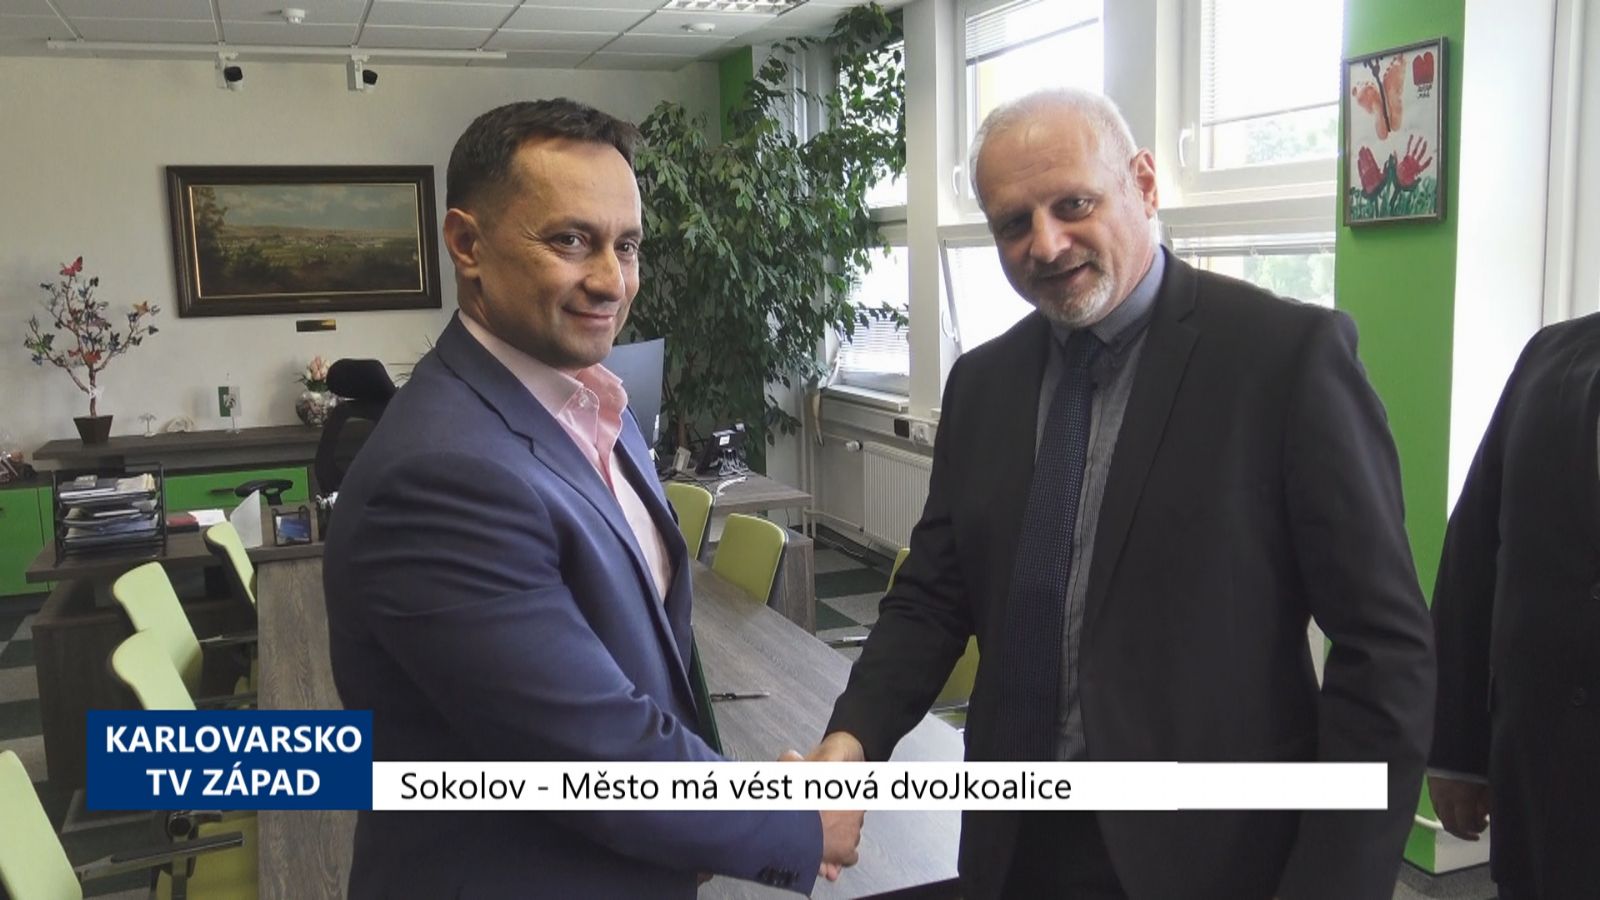 Sokolov: Město má vést nová dvojkoalice (TV Západ)